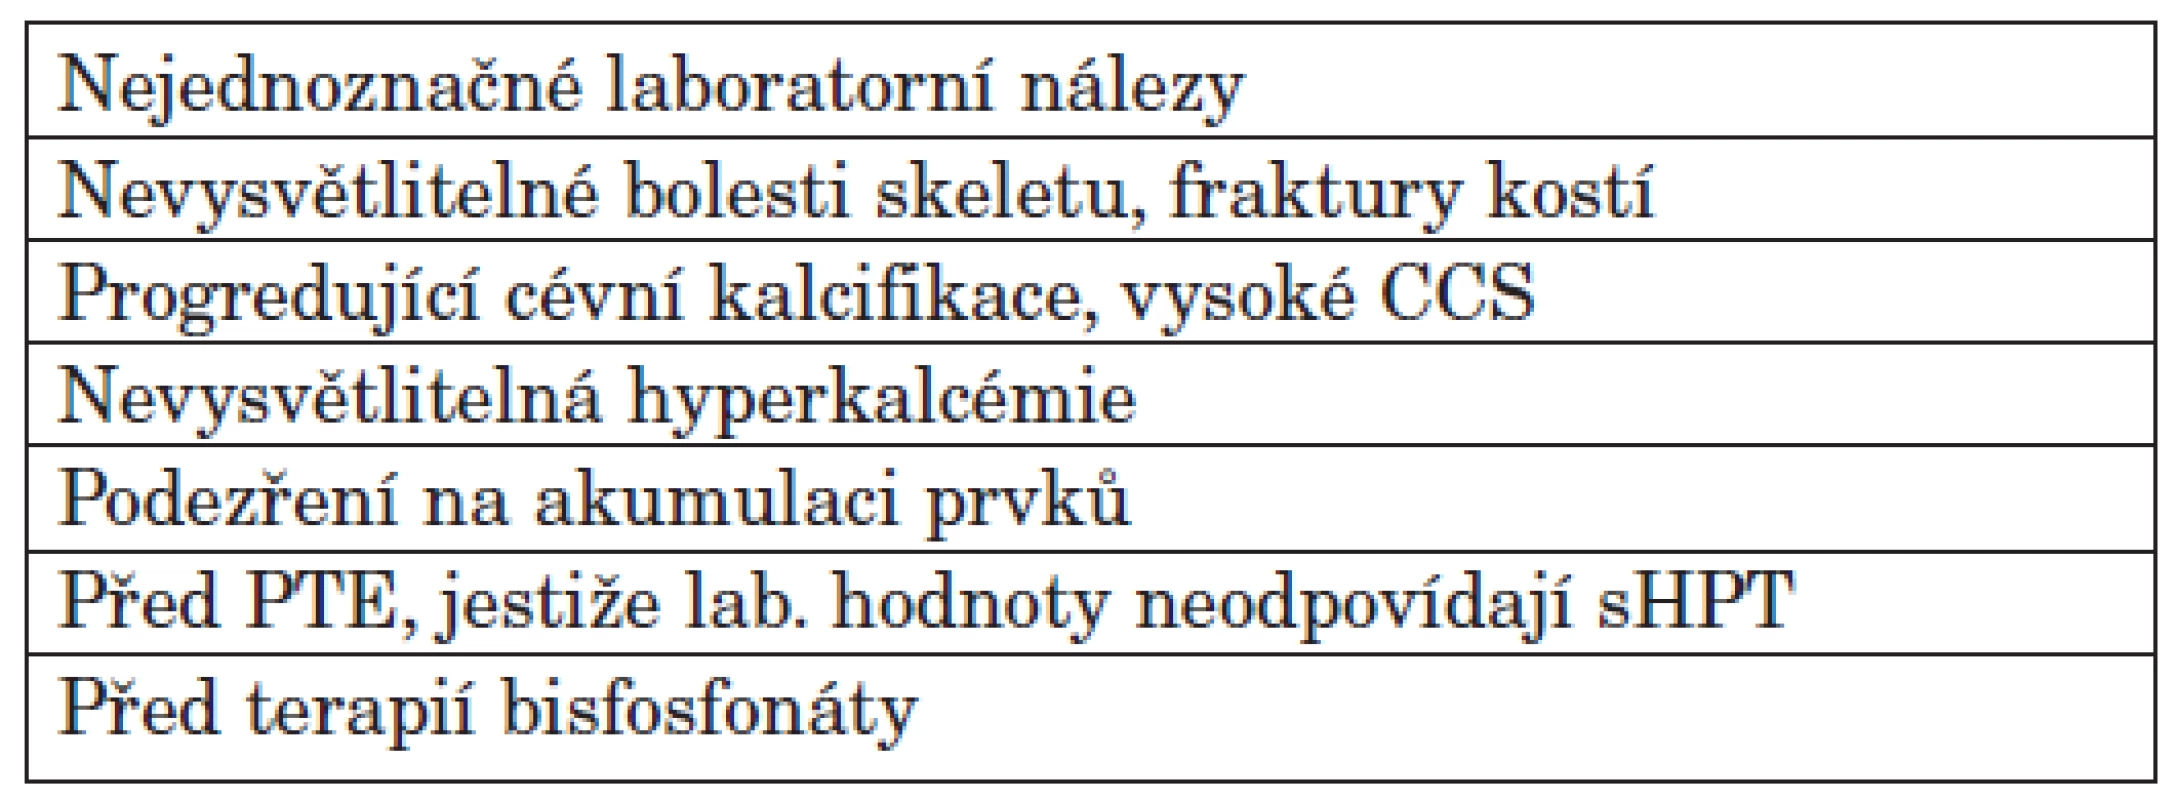 Indikace k histomorfometrickému vyšetření dle doporučení KDIGO.